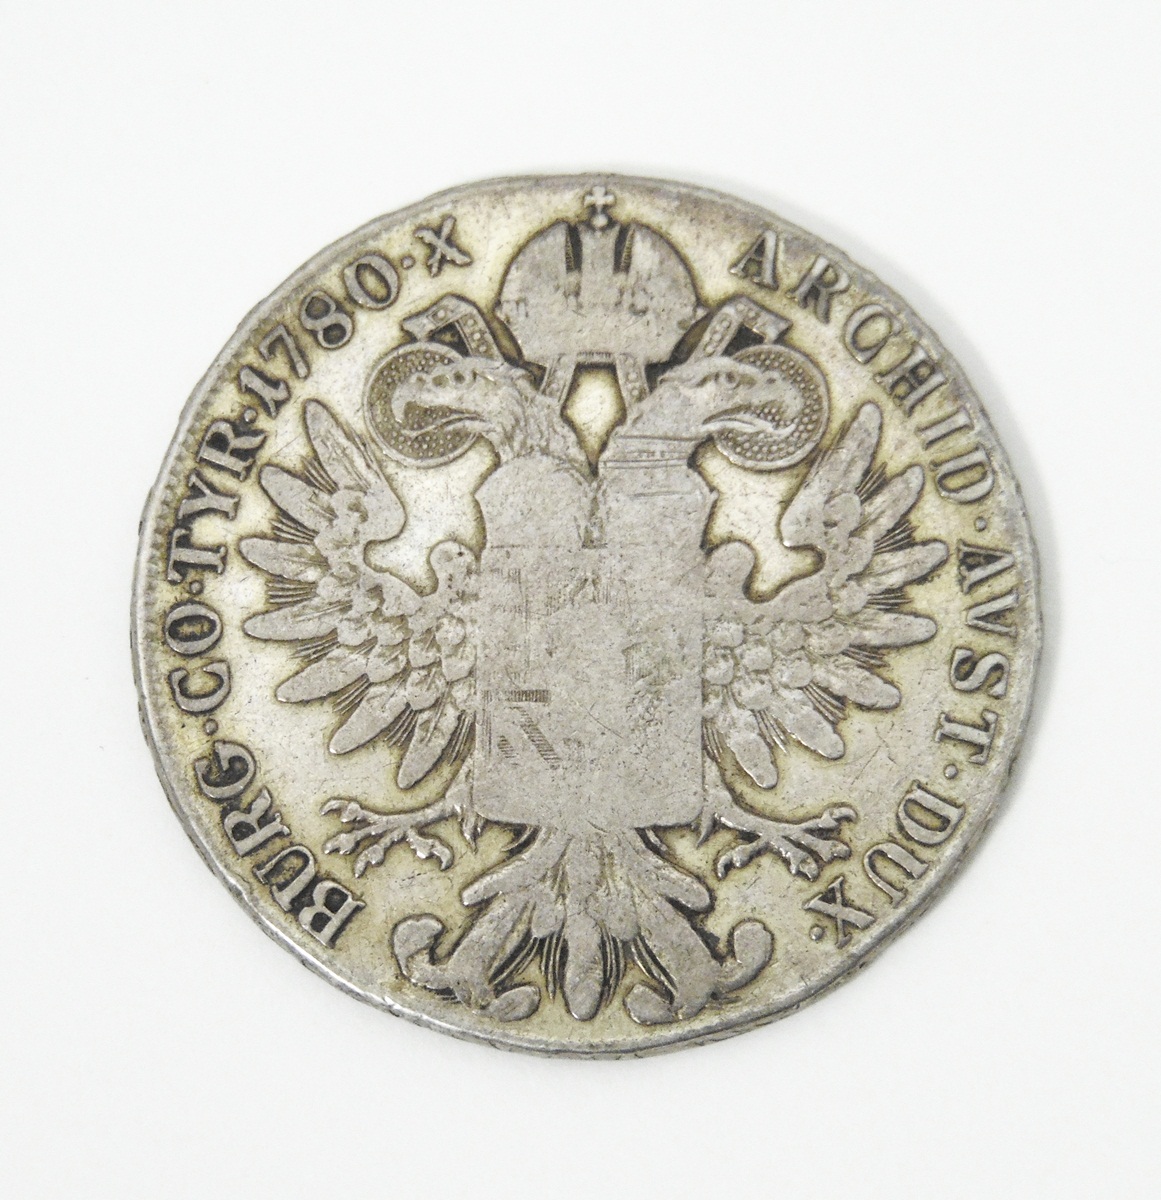 Maria Theresa silver thaler, - Image 2 of 2